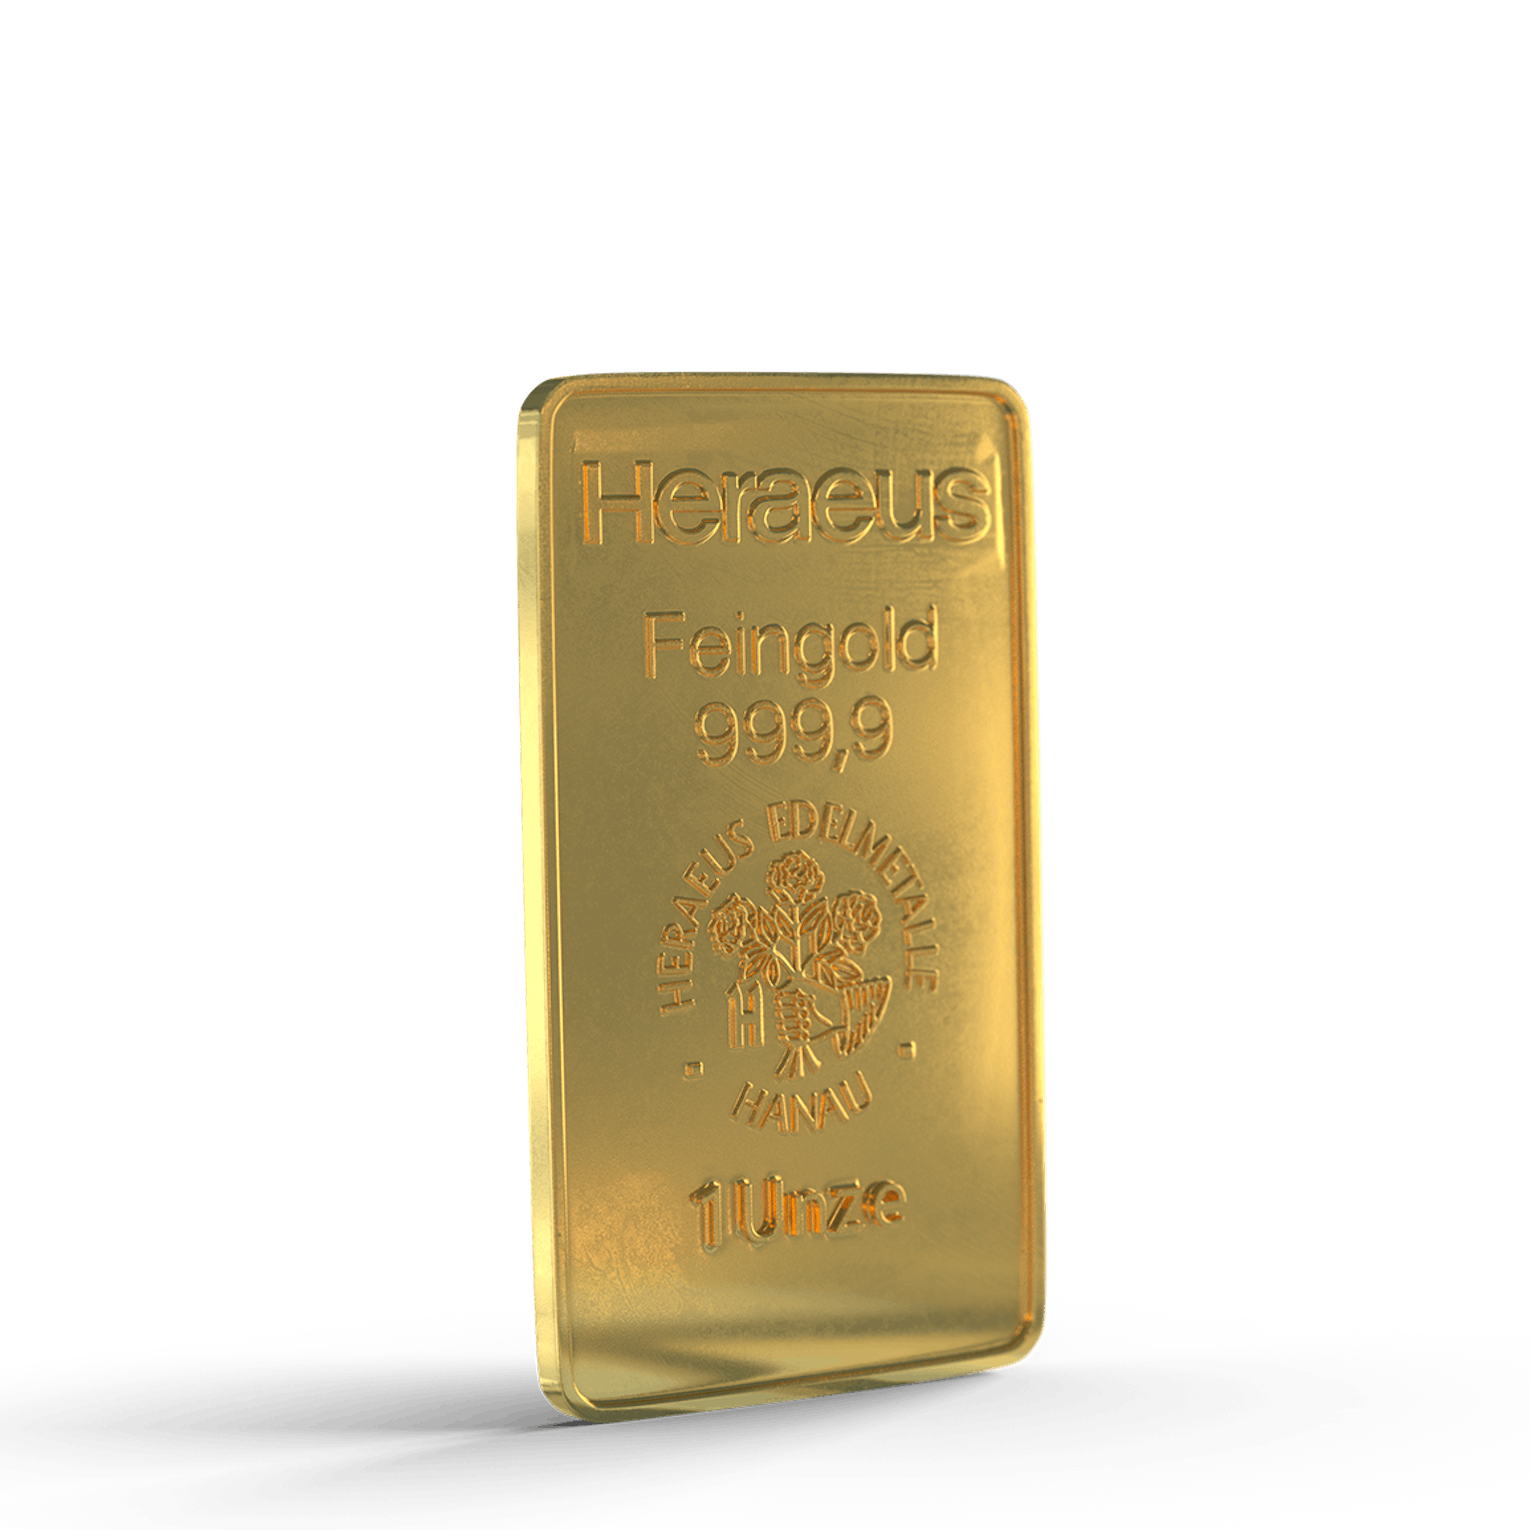 Auksas yra geidžiamiausias taurusis metalas visame pasaulyje.